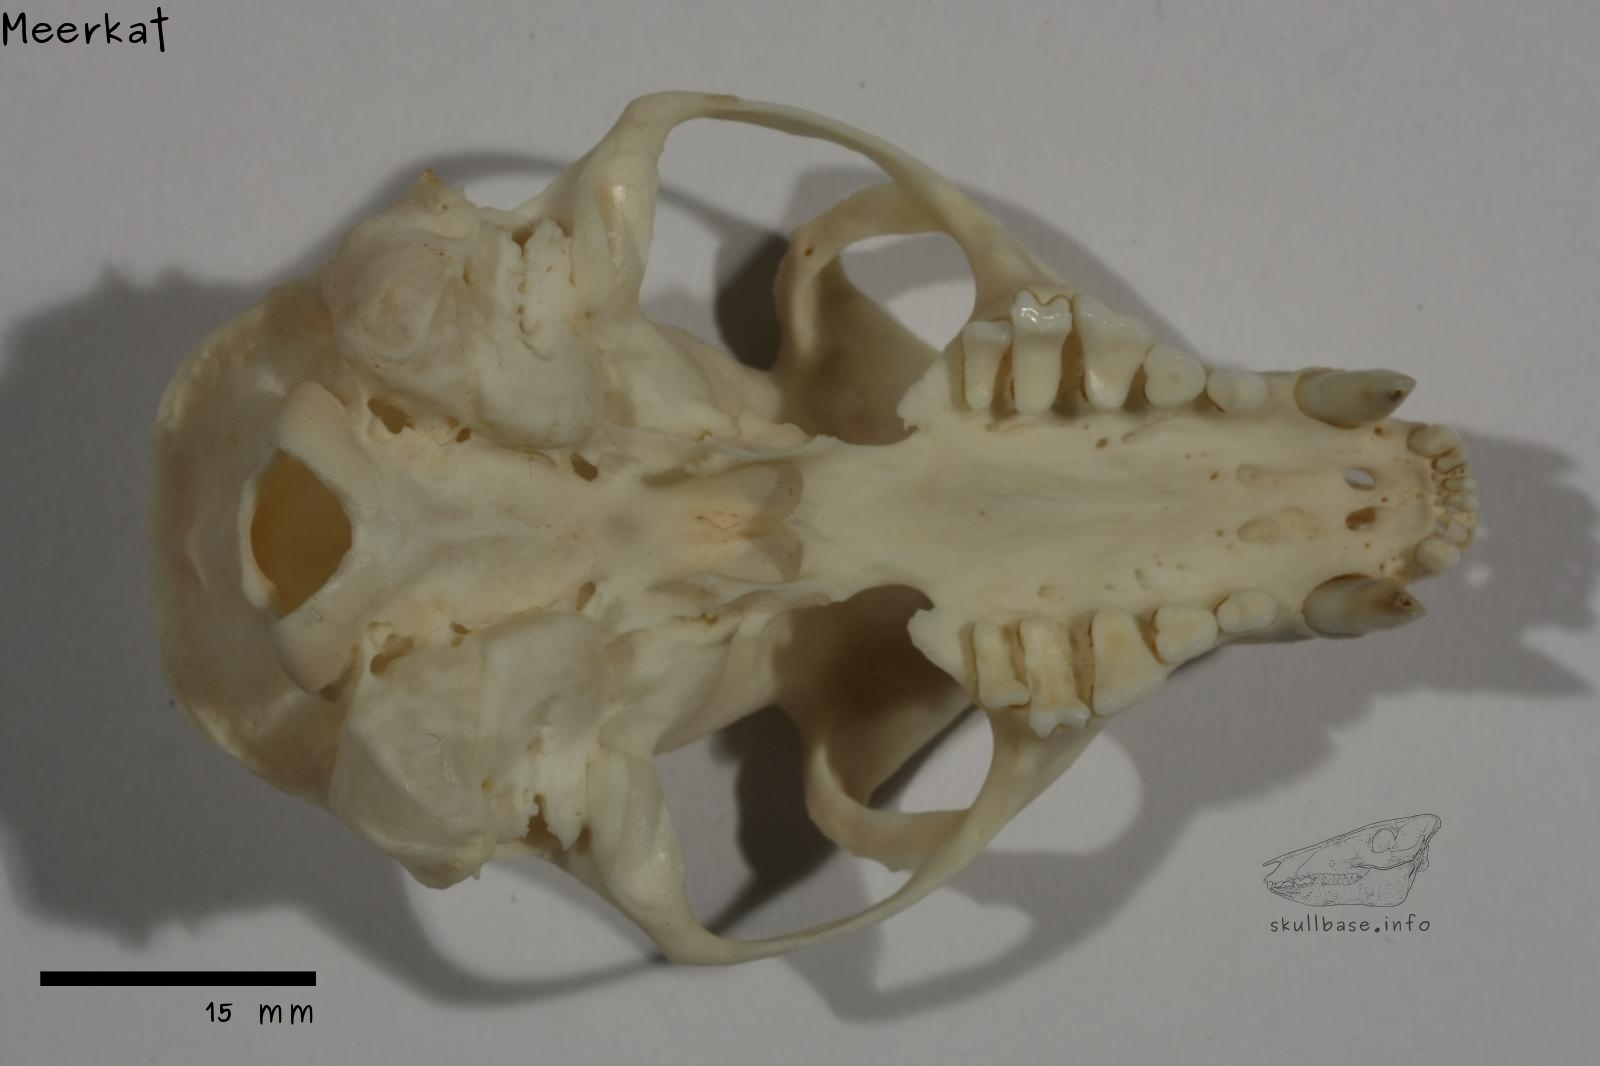 Meerkat (Suricata suricatta) skull ventral view